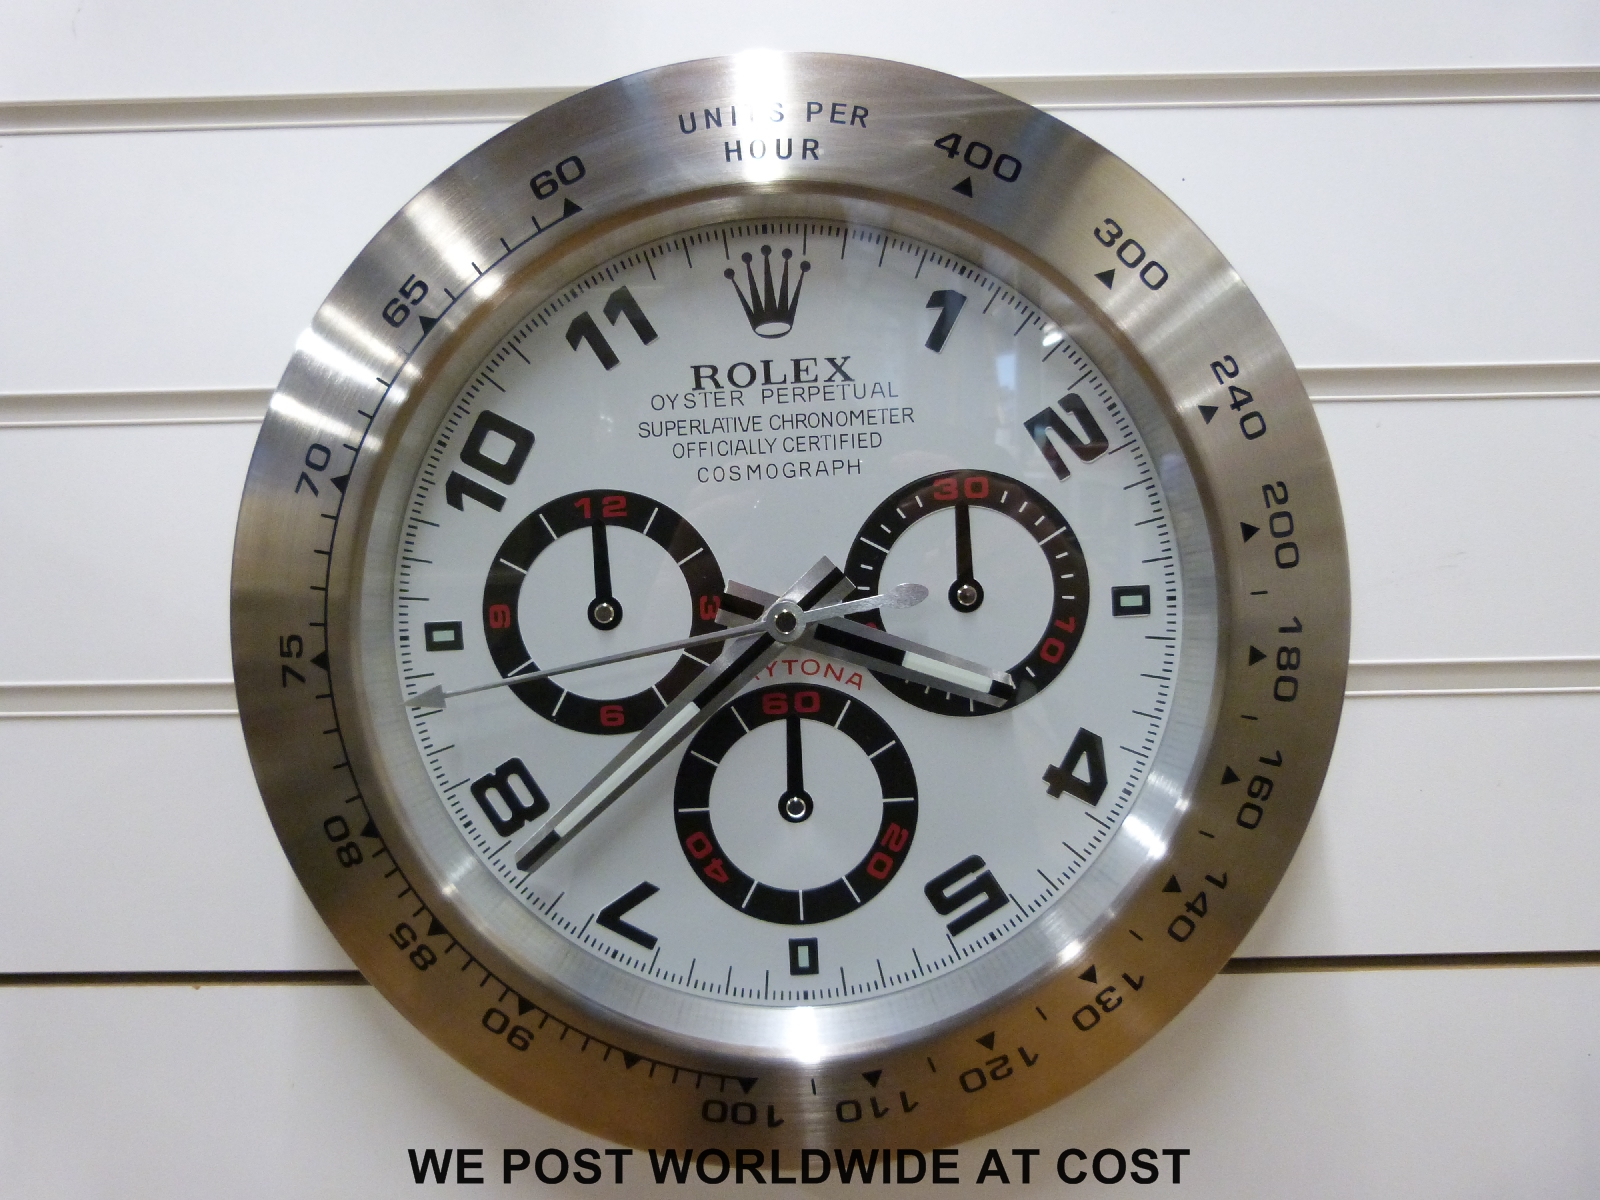 Rolex advertising clock white Daytona style, - Image 2 of 2